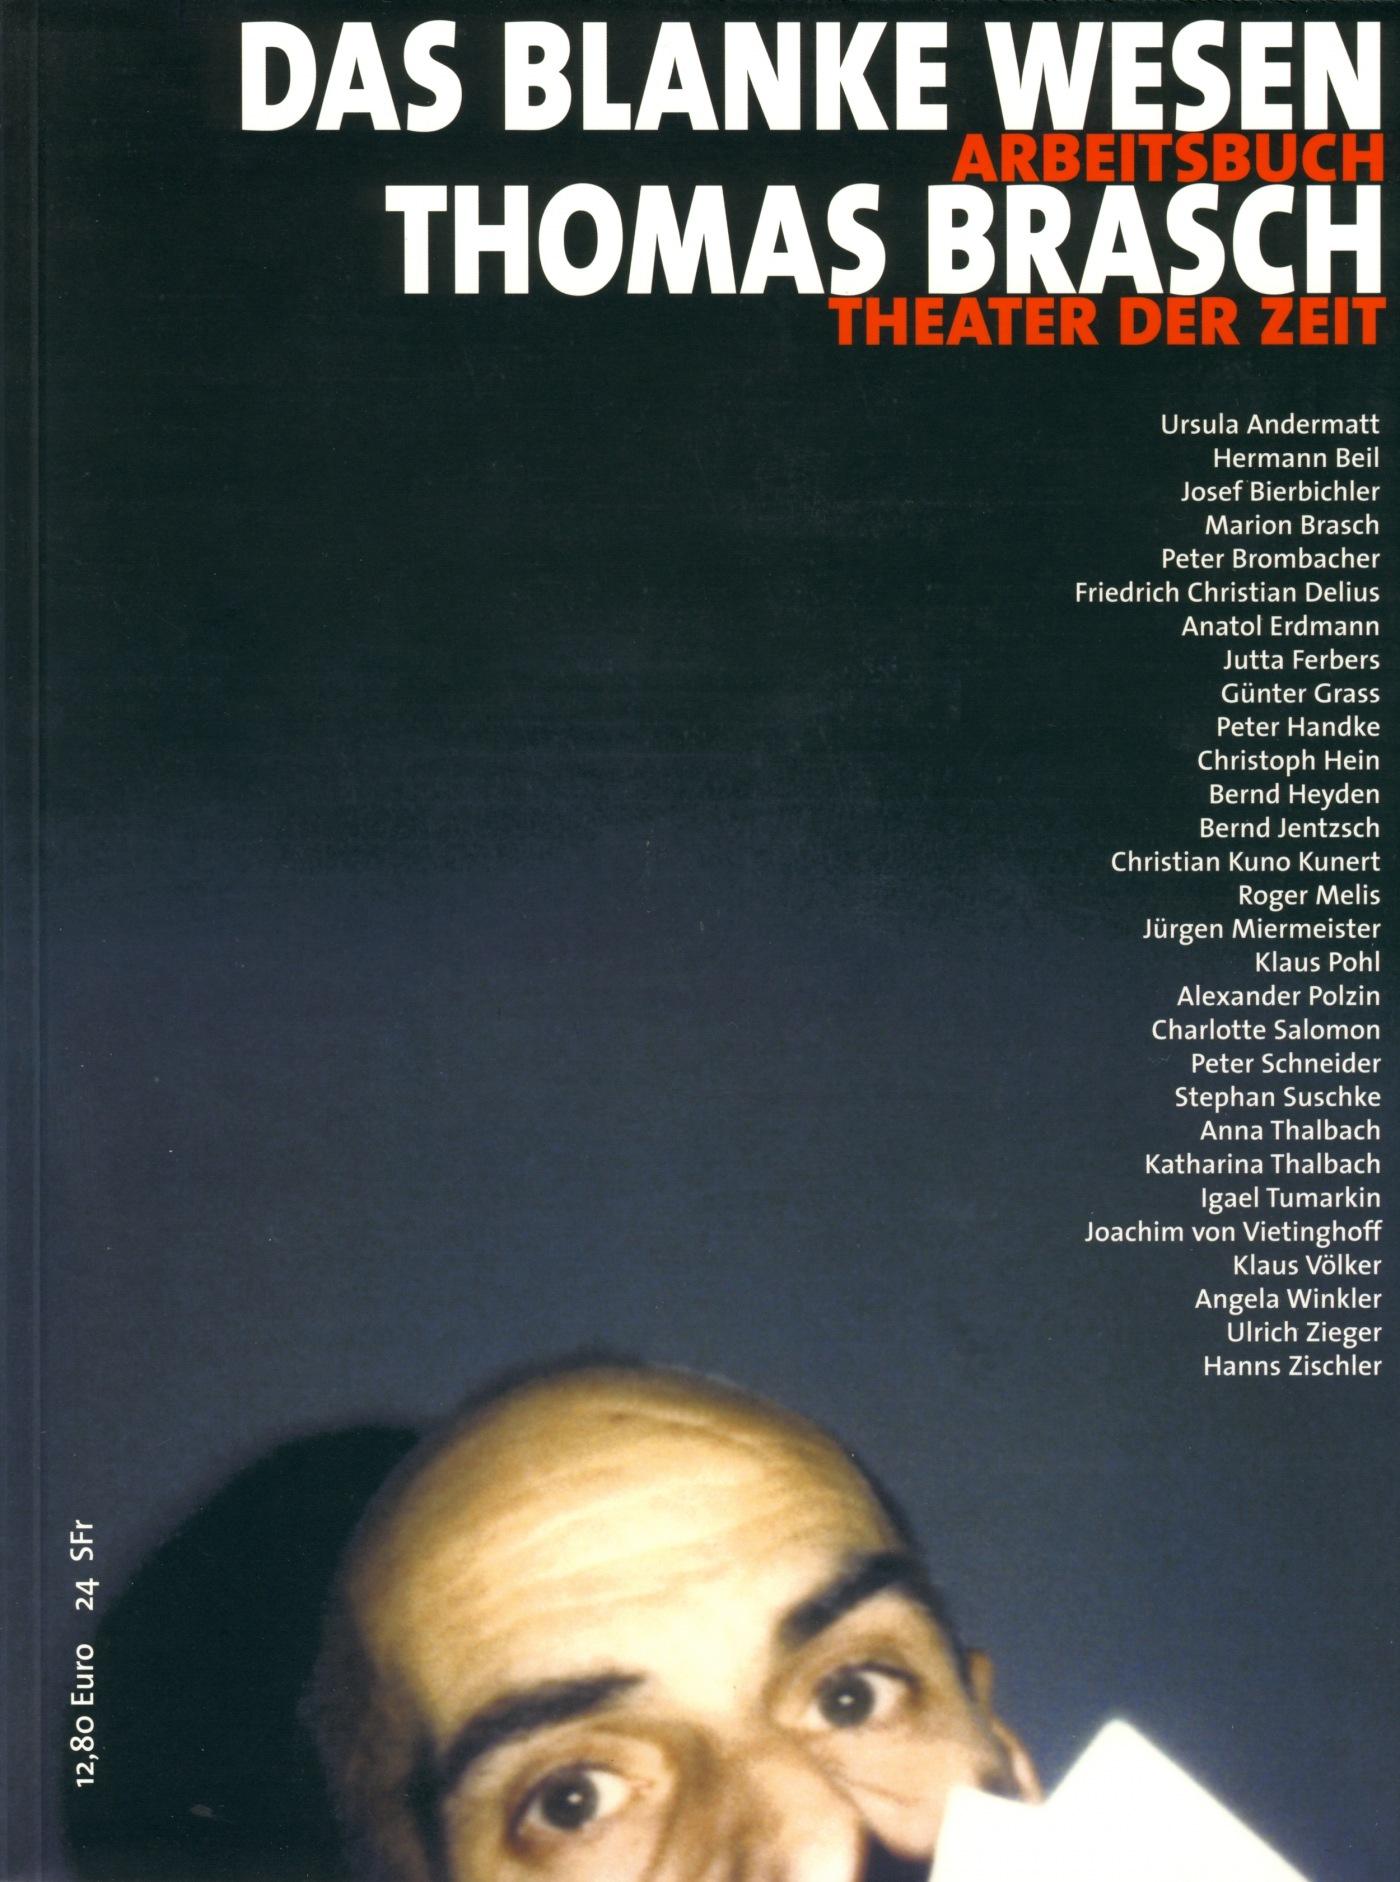 Arbeitsbuch 13 "Thomas Brasch, Das blanke Wesen"